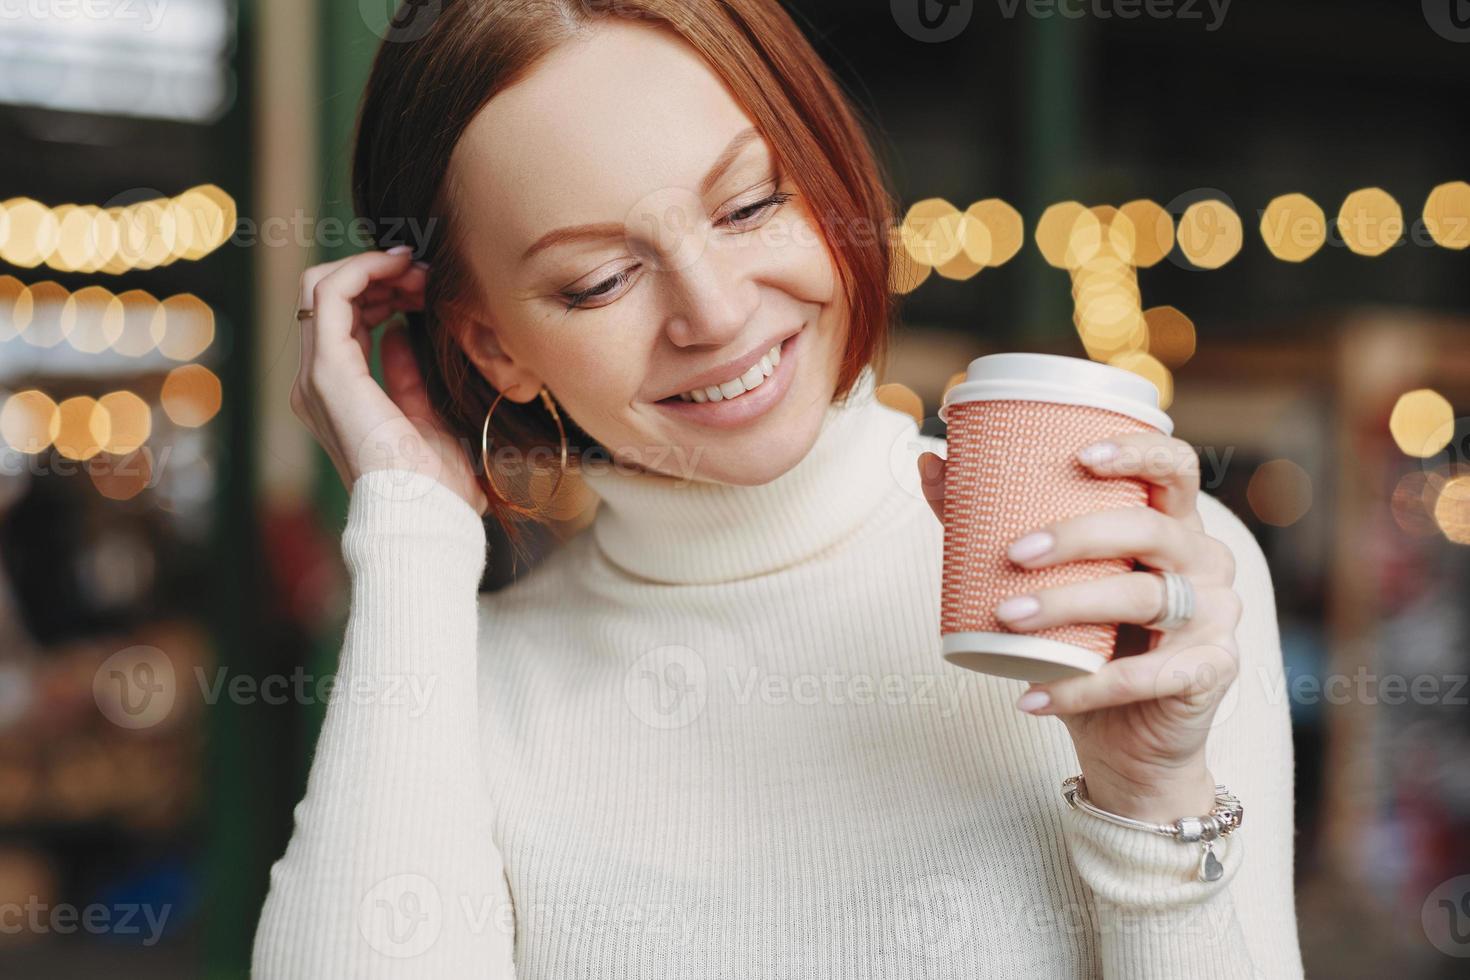 foto ritagliata di una donna dall'aspetto piacevole posa in un caffè all'aperto, tiene una tazza di caffè di carta, vestita con un abito bianco, sorride felicemente, parla con un collega o un amico durante la pausa. femmina con bevanda